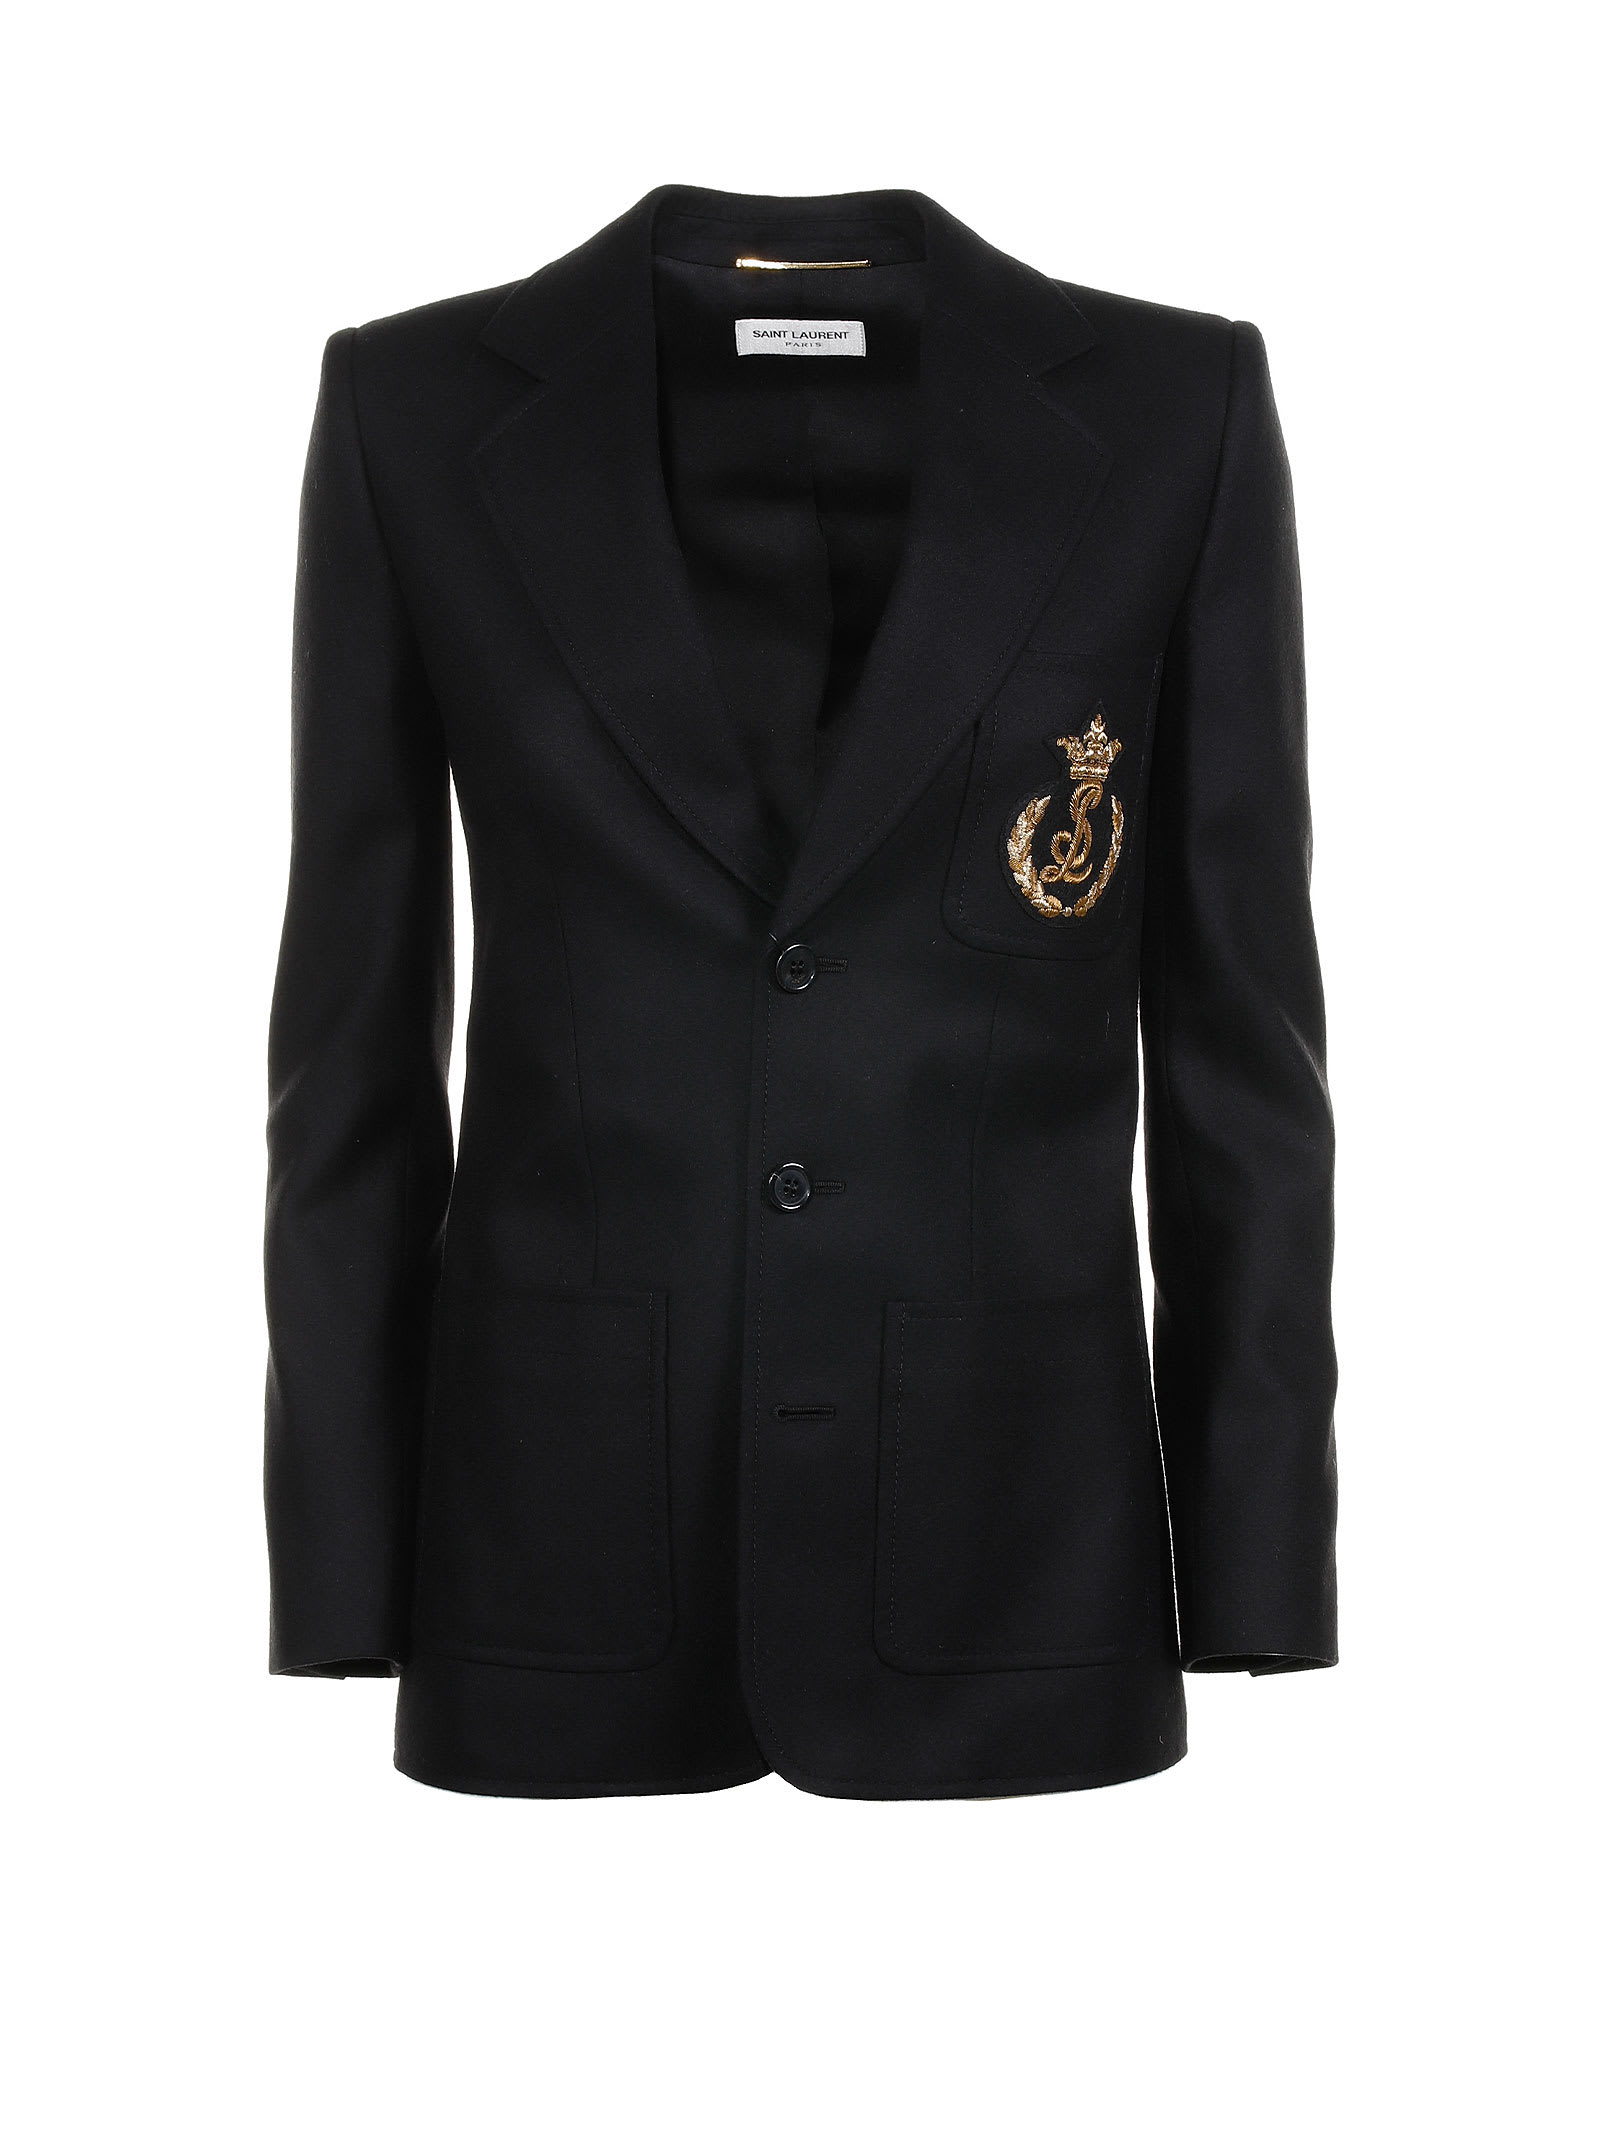 Saint Laurent Jacket In Black Virgin Wool